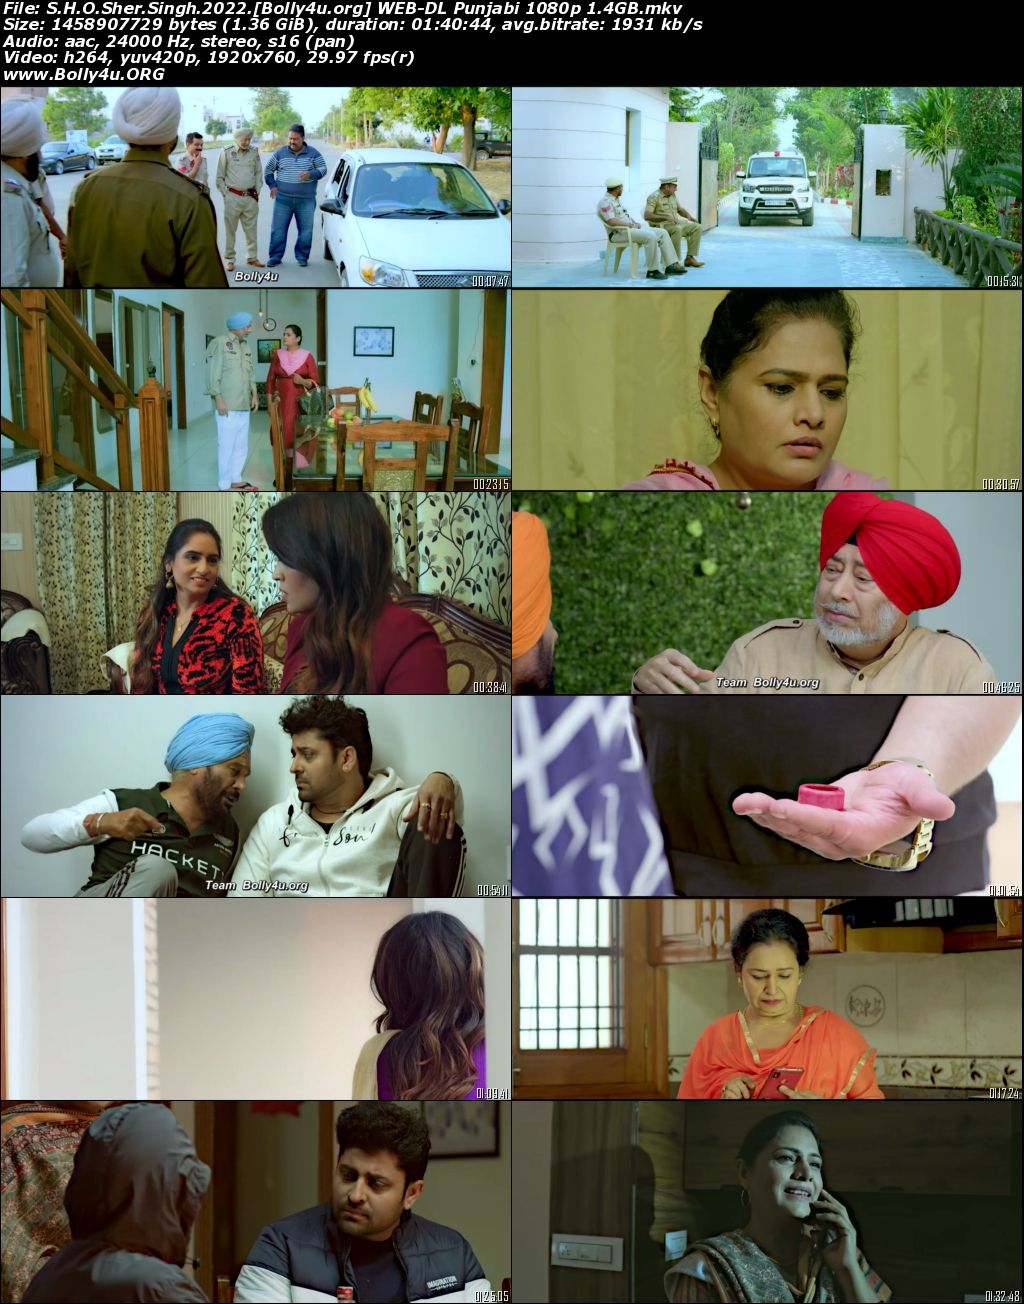 SHO Sher Singh 2022 WEB-DL Punjabi Full Movie Download 1080p 720p 480p